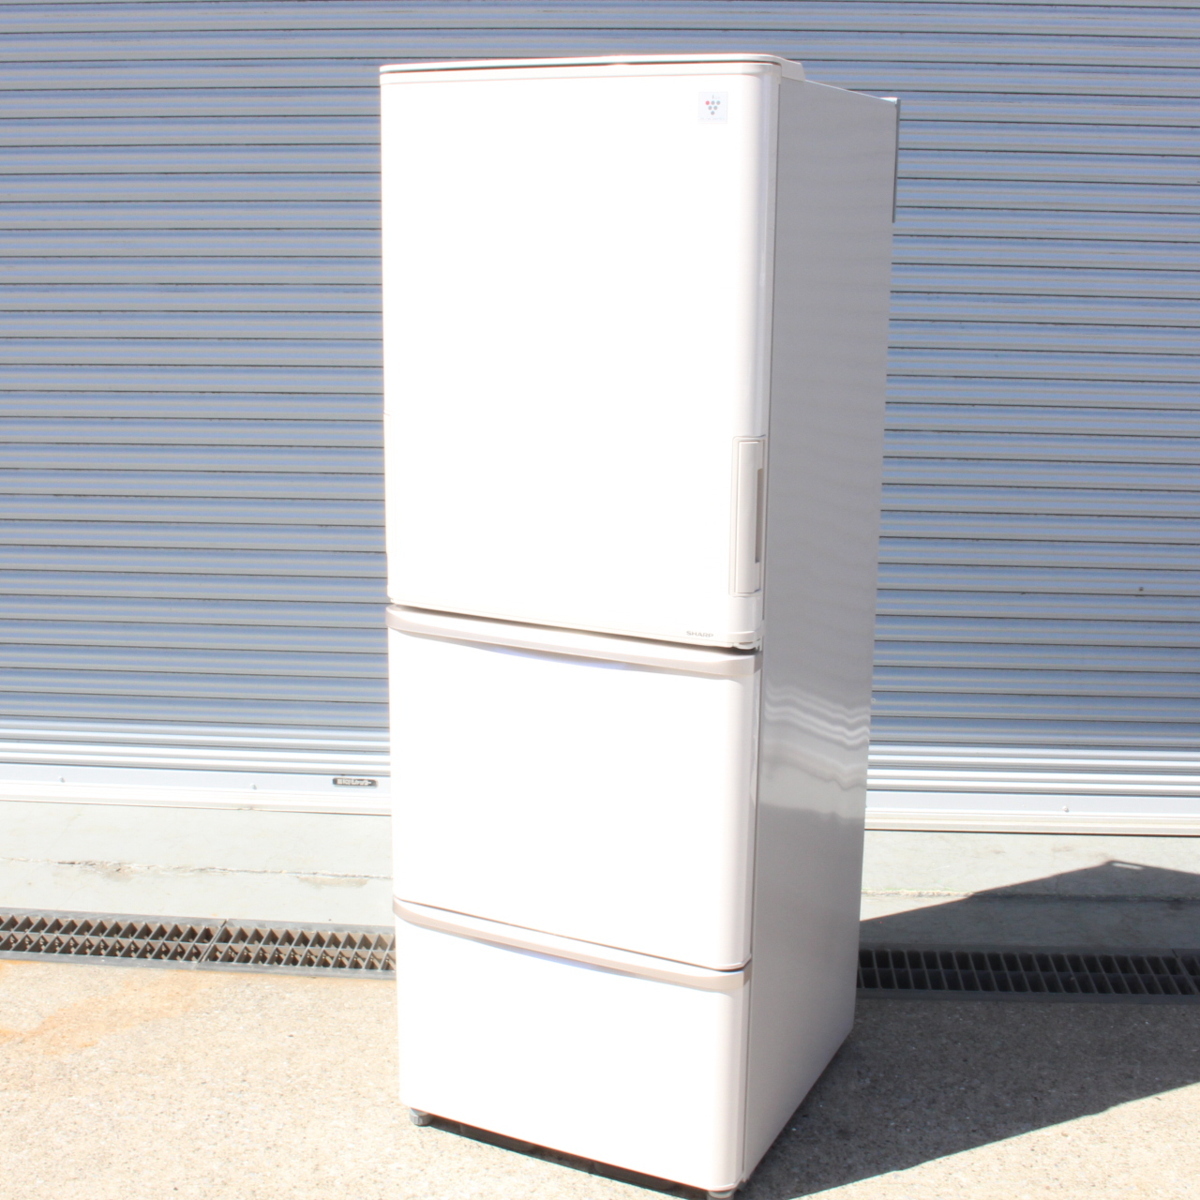 横浜市鶴見区にて シャープ 冷蔵庫 SJ-PW35A-C 2015年製 を出張買取させて頂きました。